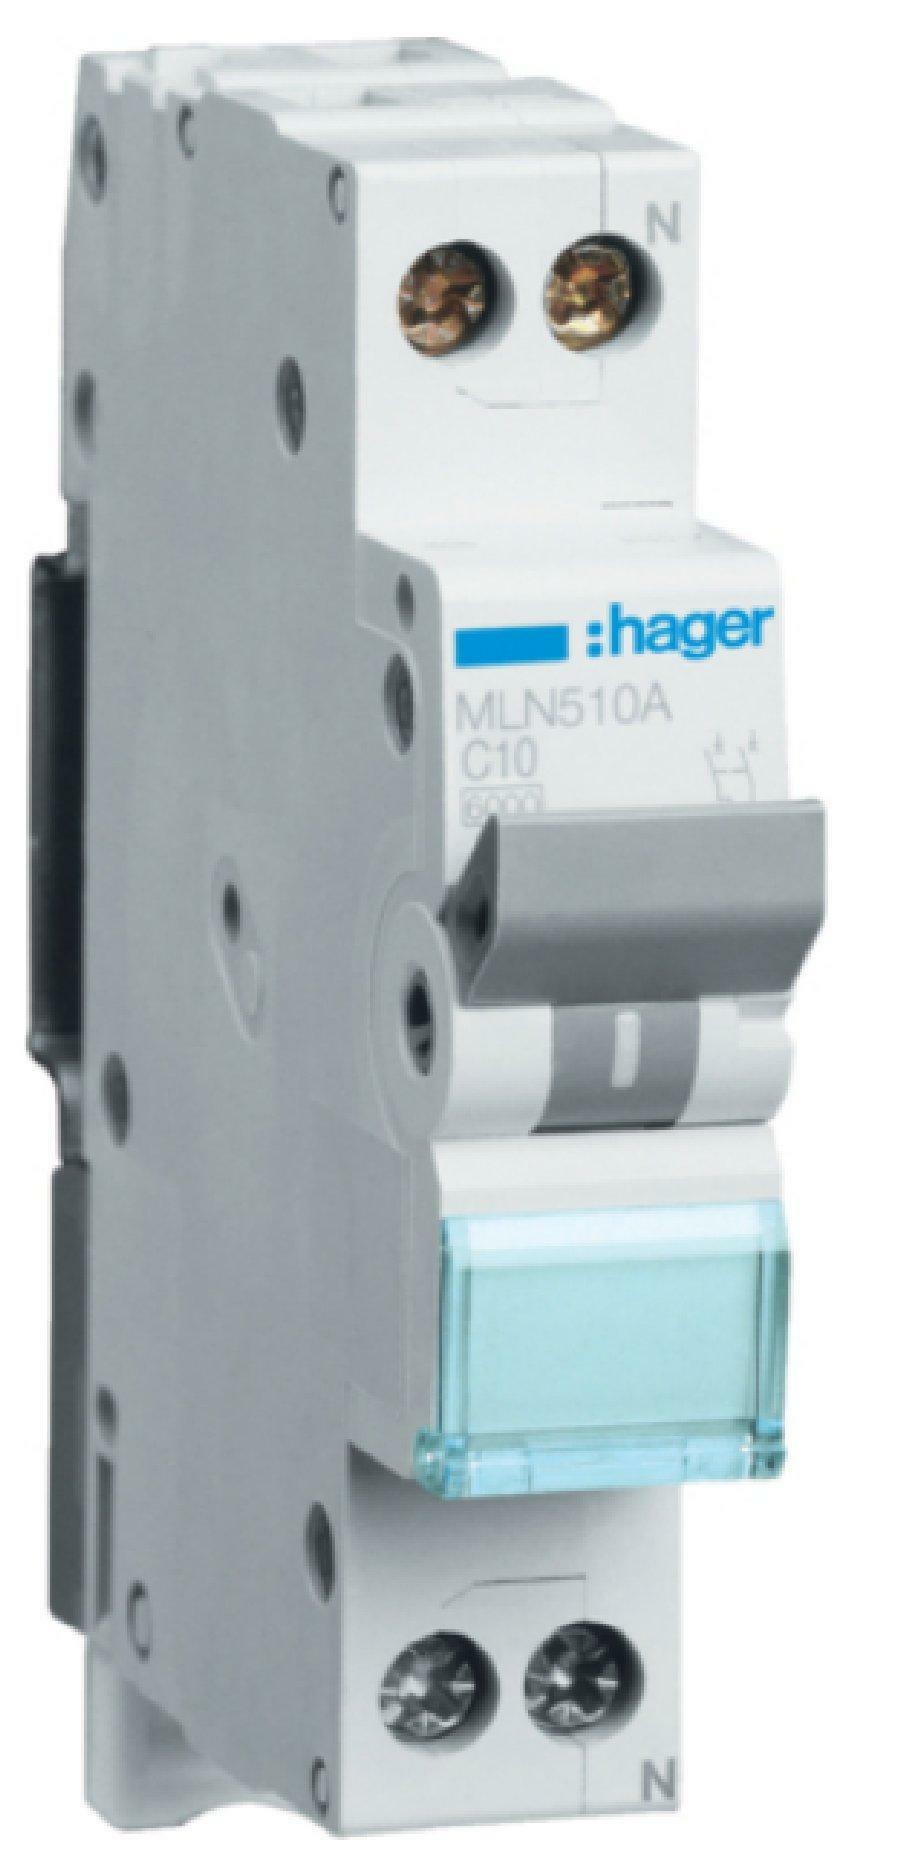 hager hager interruttore automatico per comando e protezione modulare 1 polo + neutro 10a 6 ka c 1 modulo mln510a